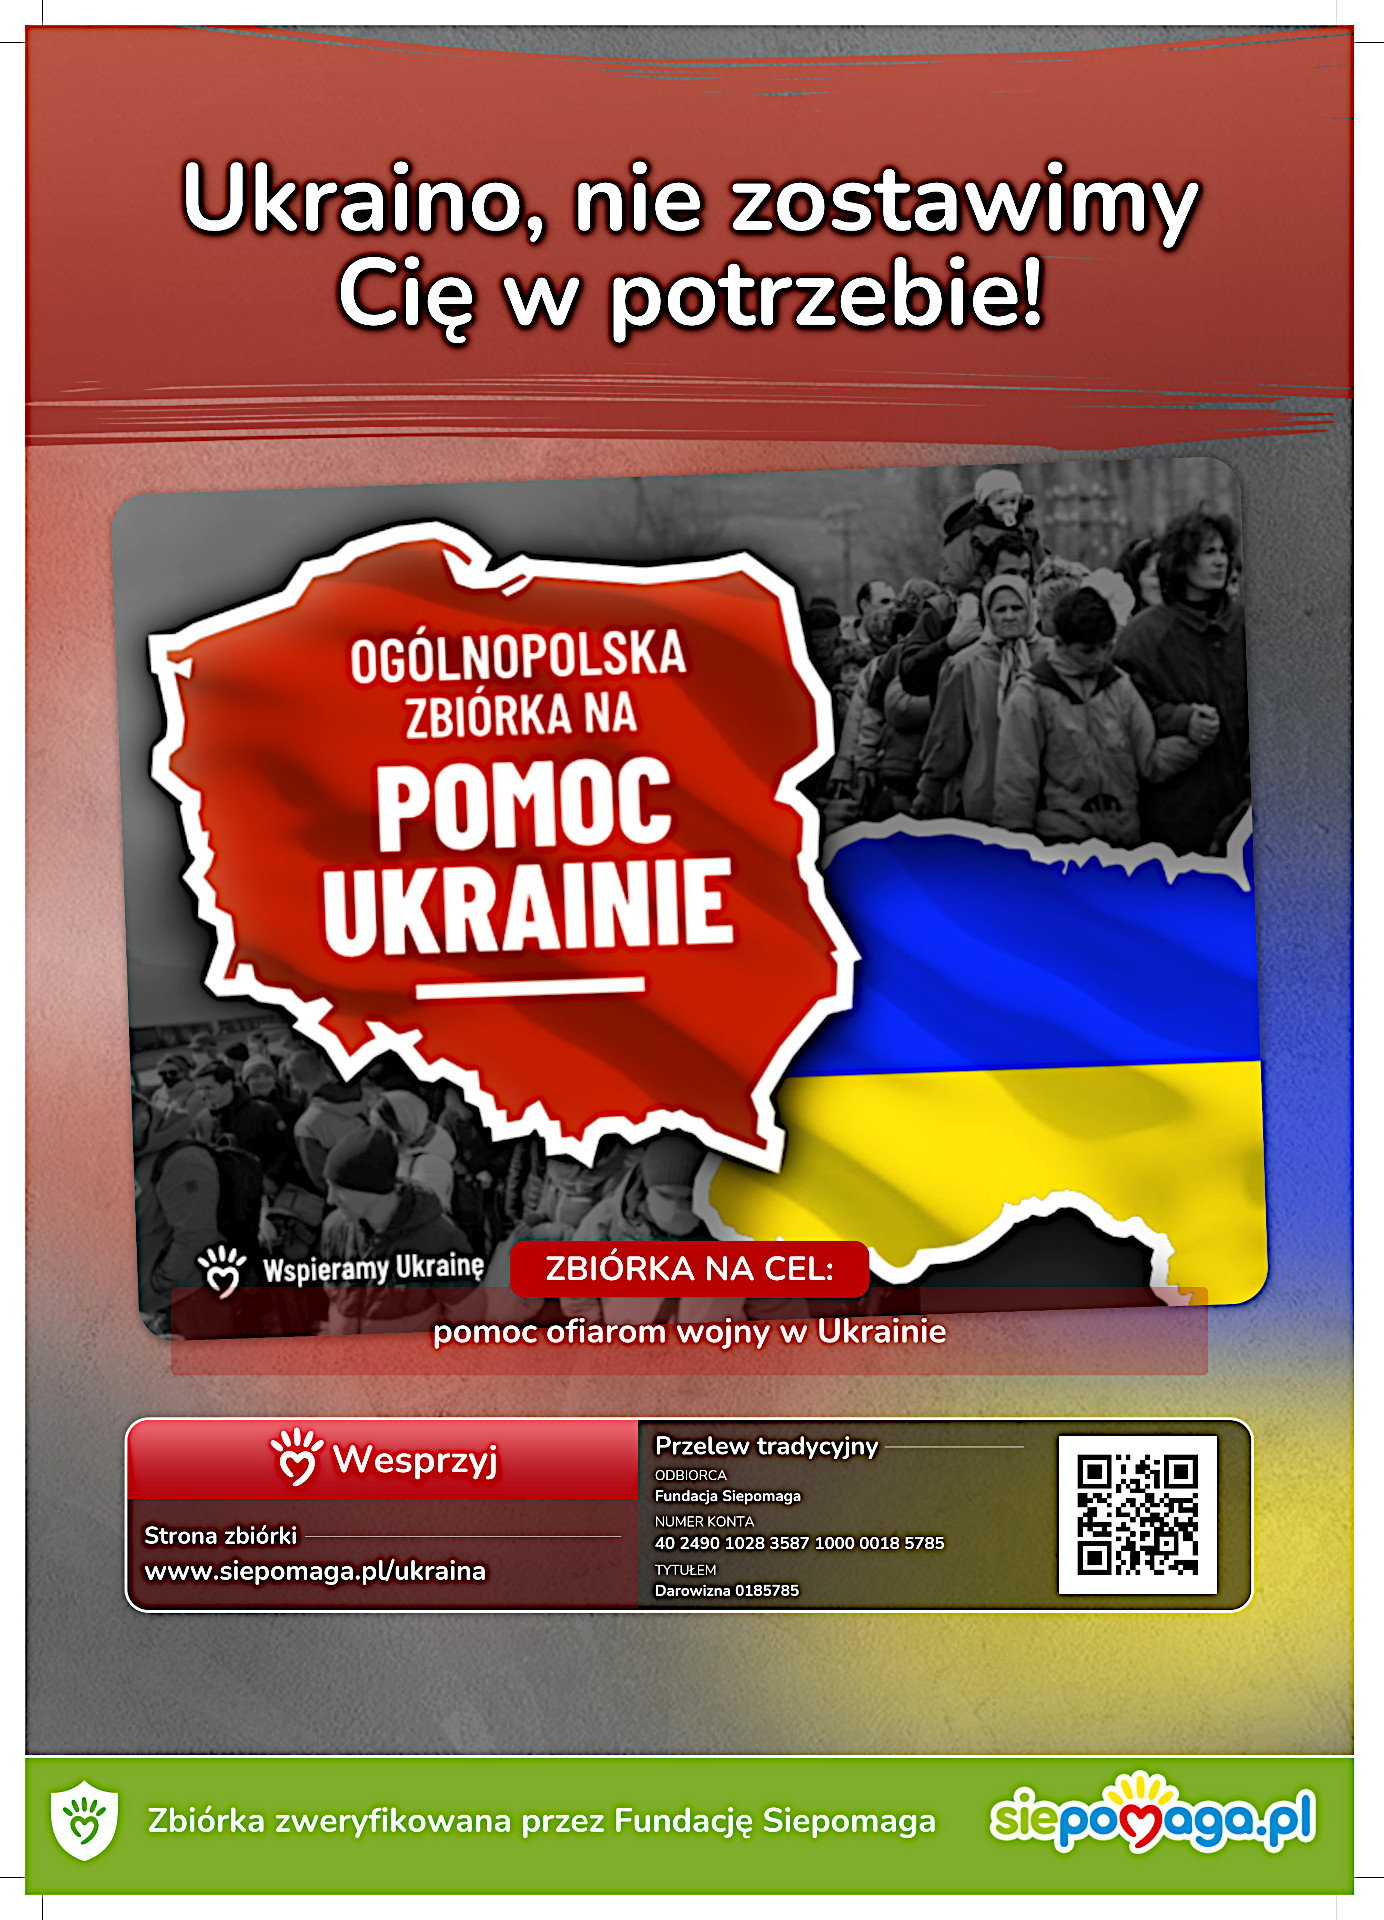 Zbiórka na siepomaga.pl - pomoc ofiarom wojny w Ukrainie - plakat